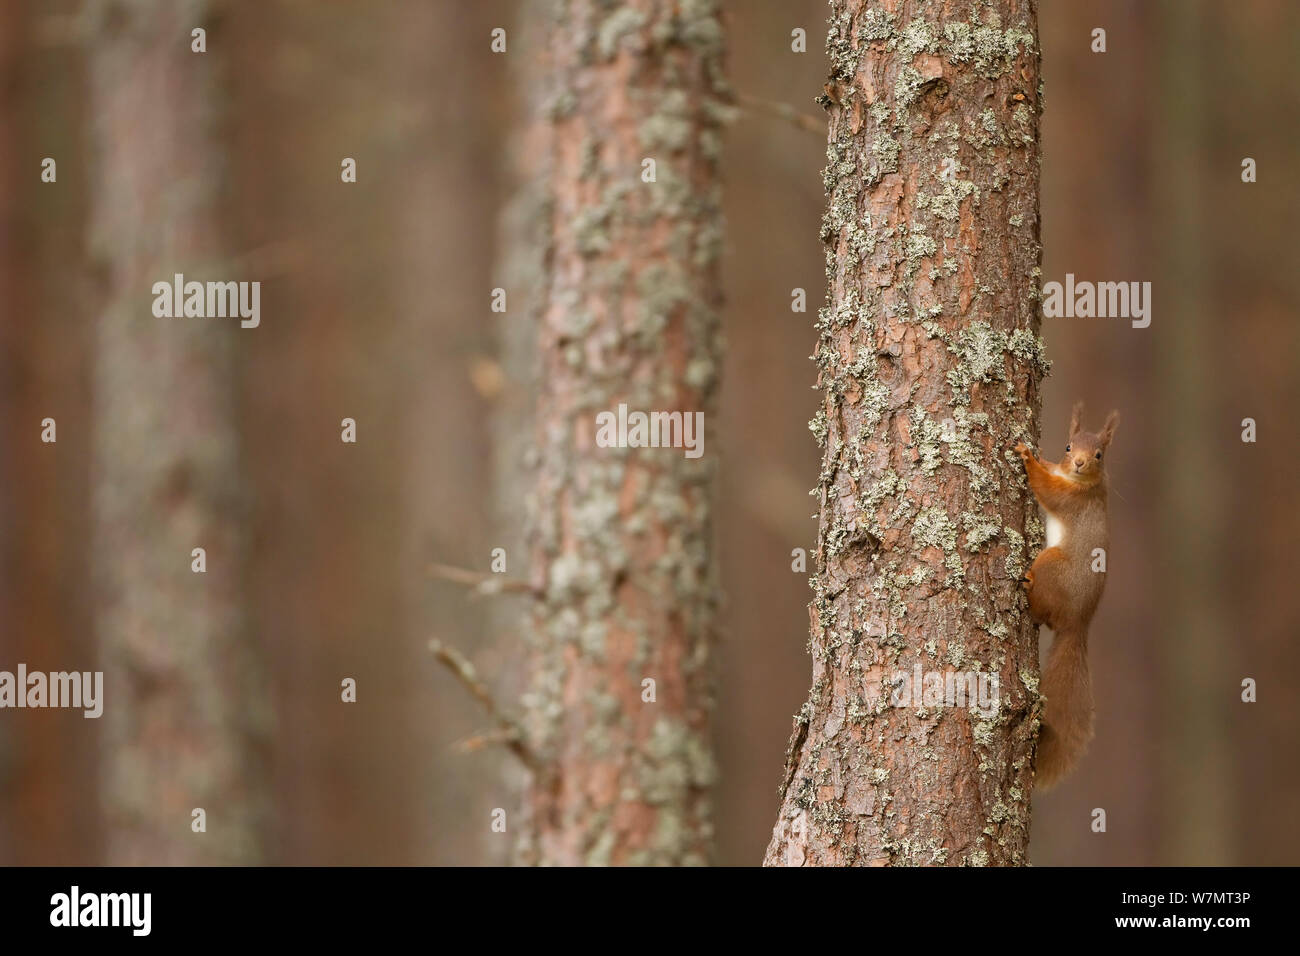 Red scoiattolo (Sciurus vulgaris) sul tronco di albero di pino silvestre foresta, Cairngorms National Park, Scozia, marzo 2012. Foto Stock